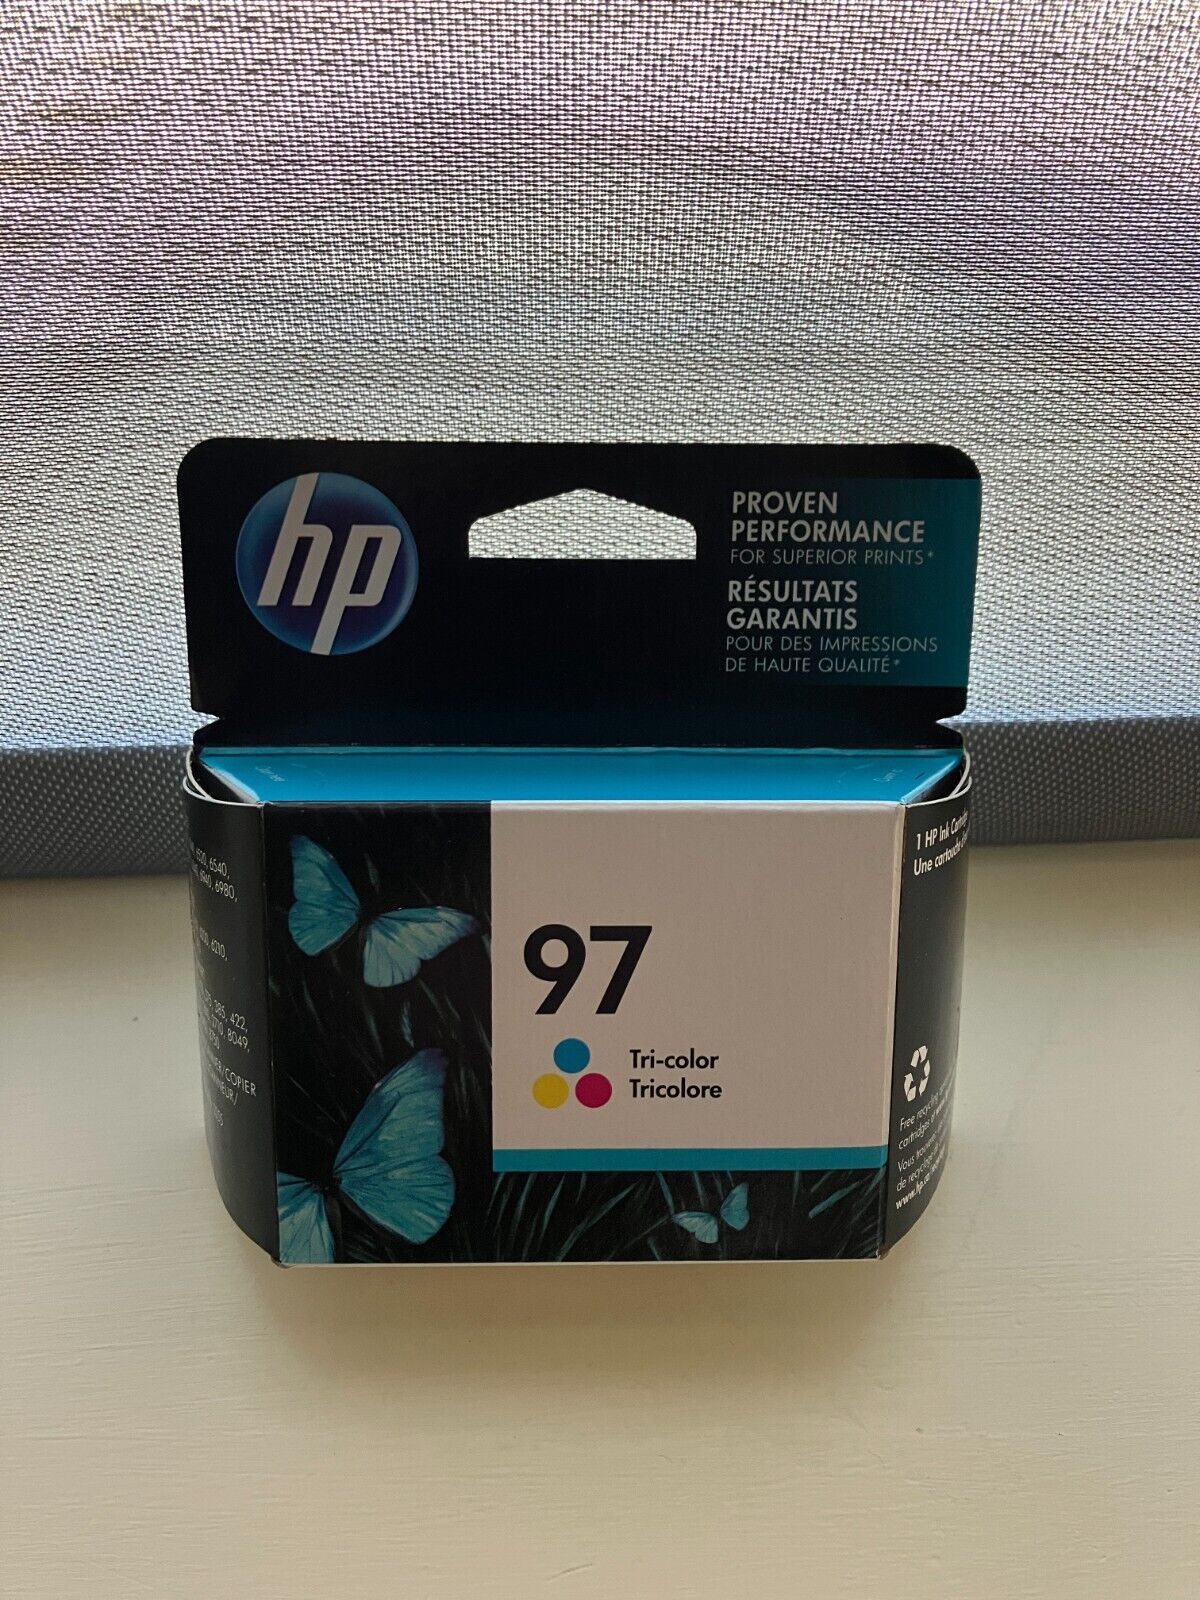 Genuine HP 97 Ink Cartridge.  Expired June 2020 